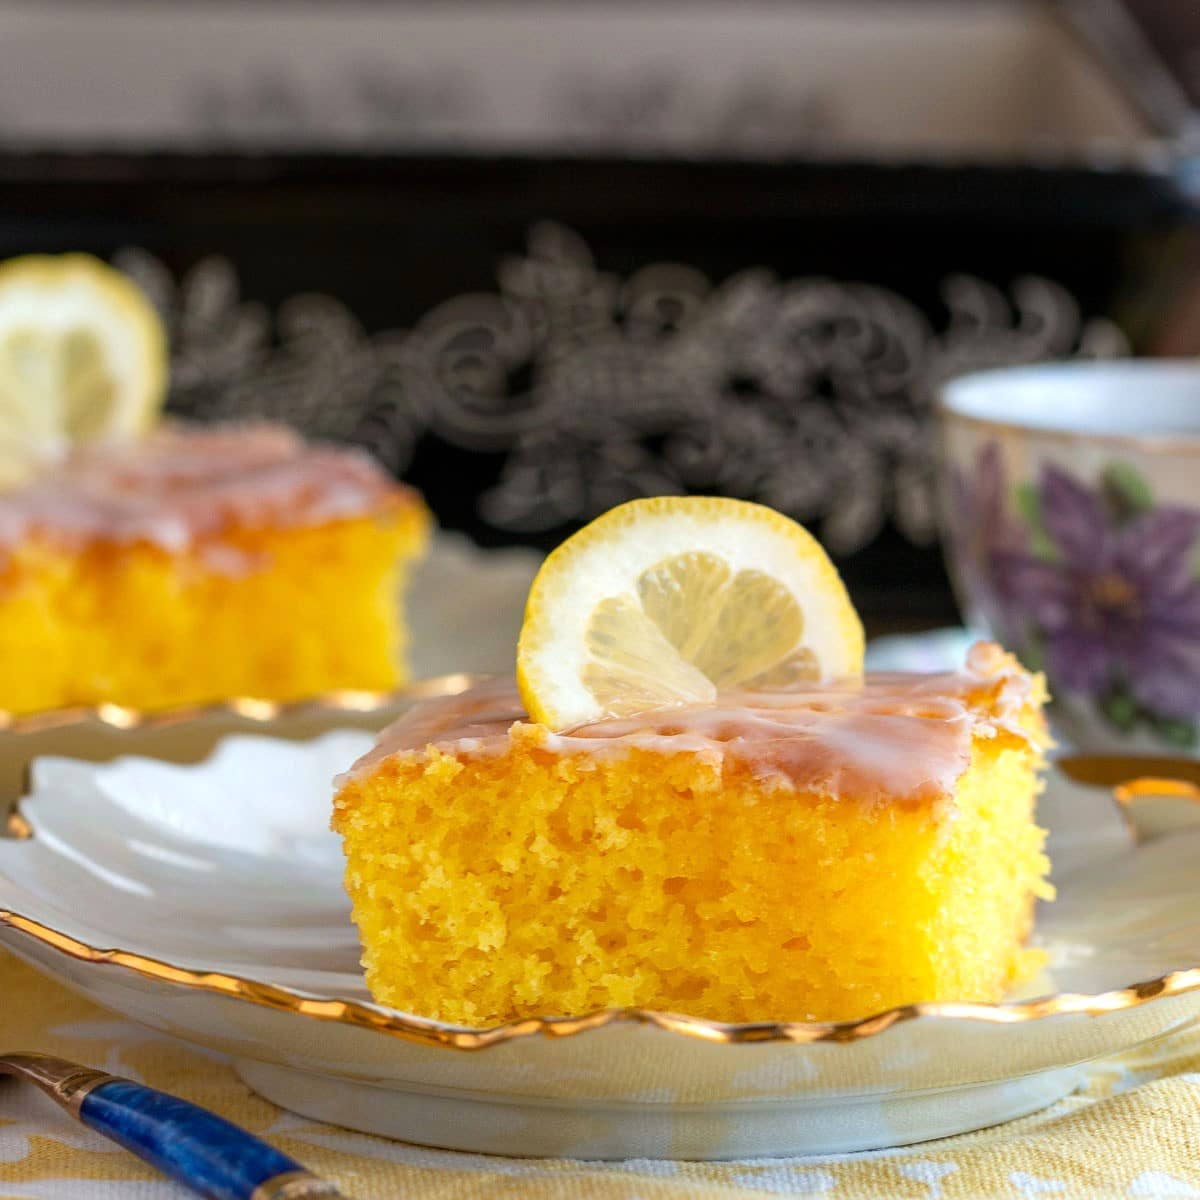 Slice of lemon poke cake with lemon glaze on a white plate served with tea.